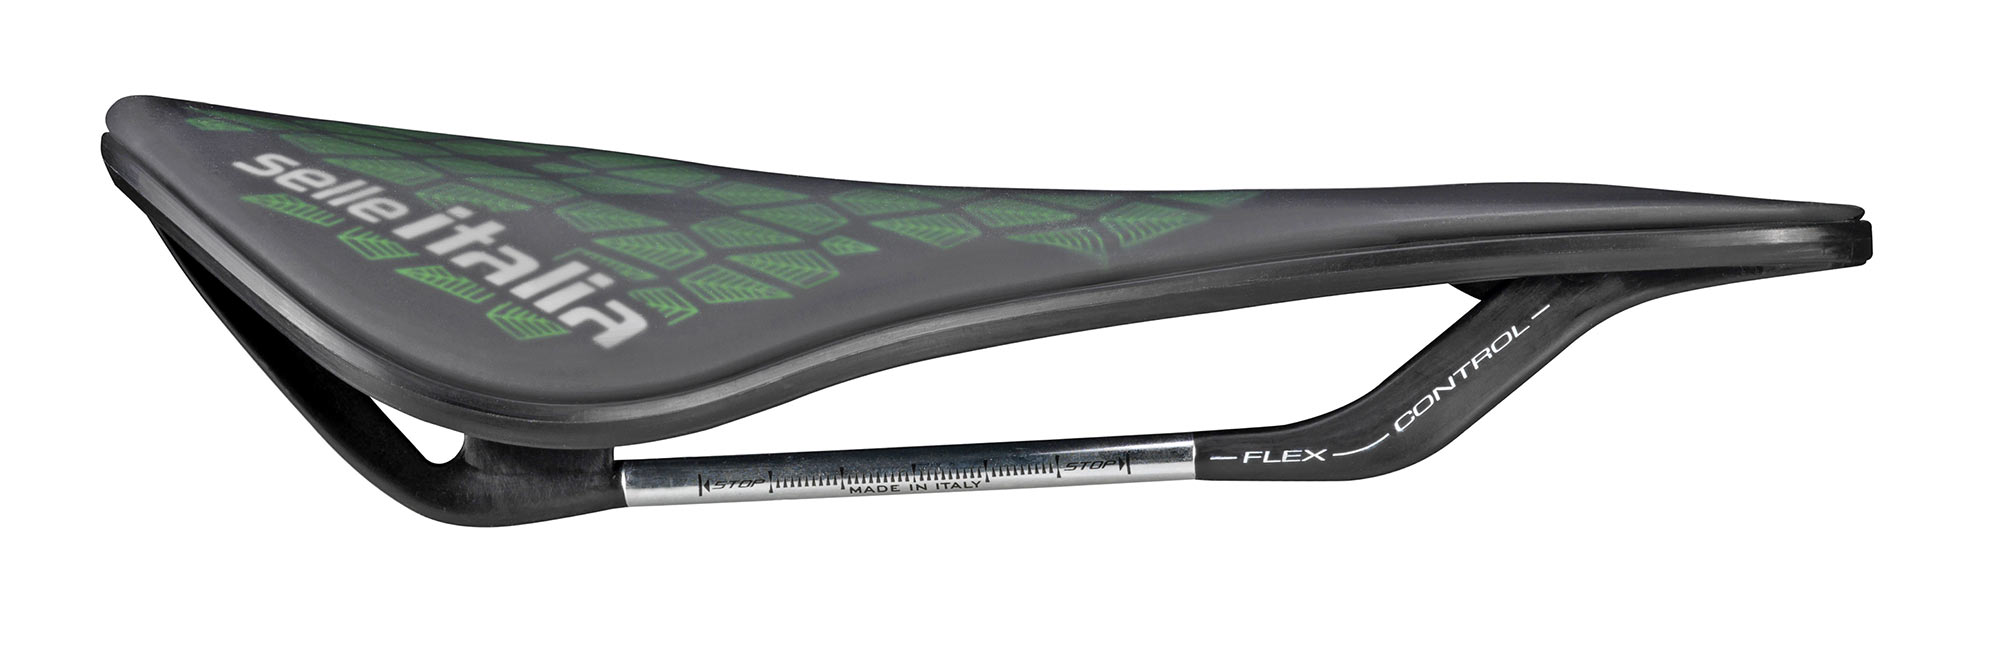 Selle Italia Model X Leaf affordable eco bike saddle, side profile